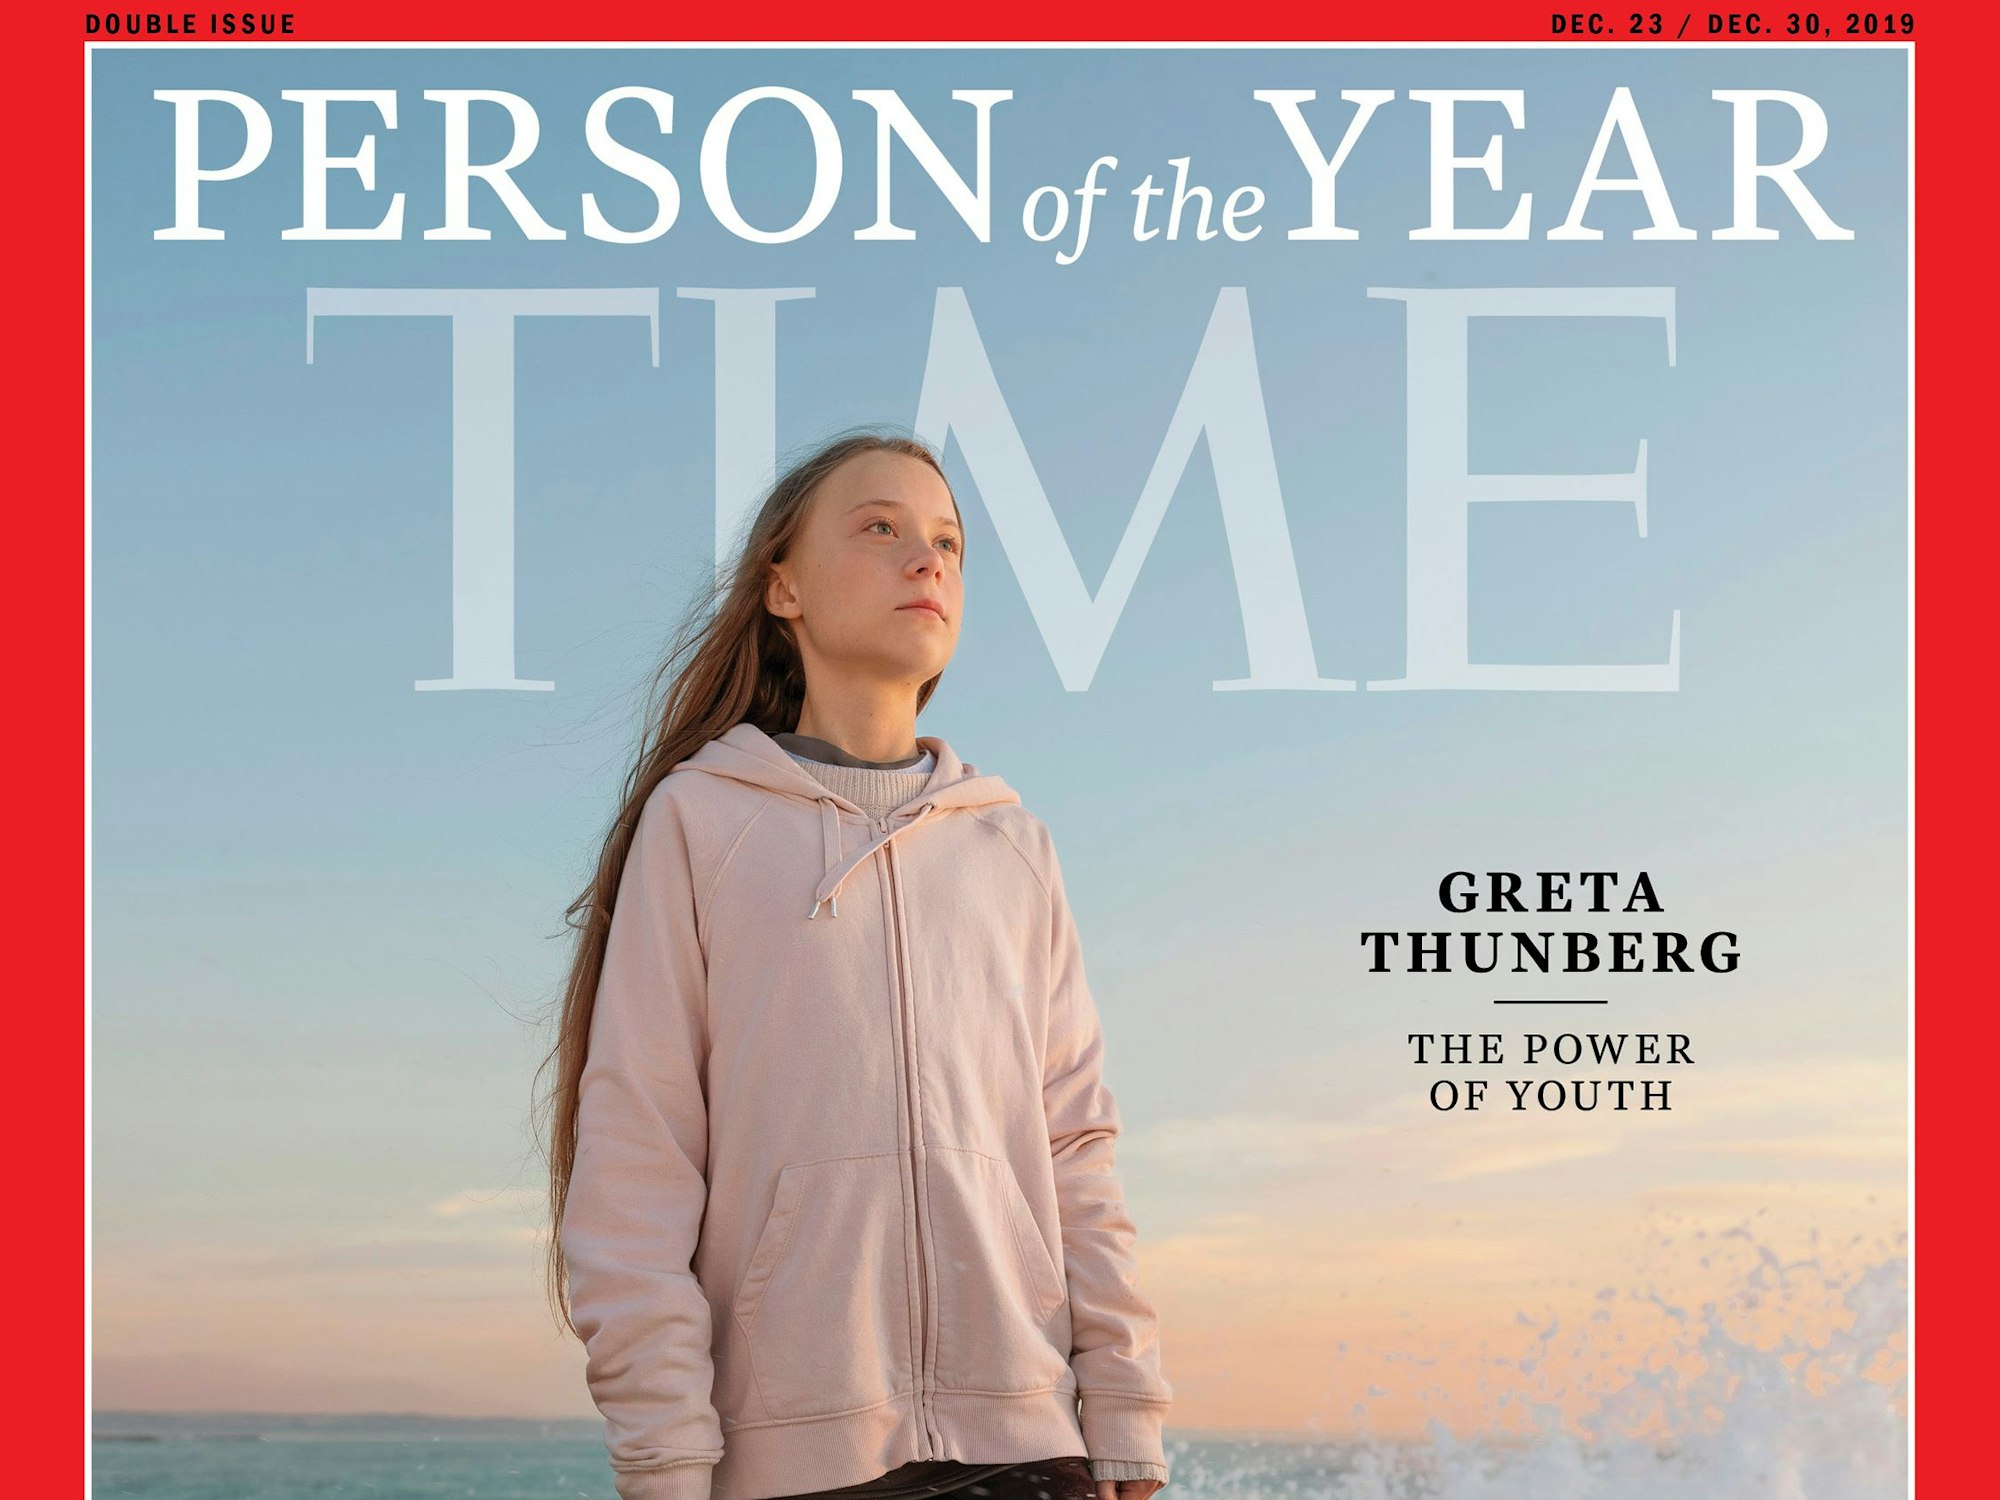 Greta Thunberg, Klimaaktivistin aus Schweden, ist 2019 auf dem Titel vom „Time Magazine“ zu sehen.